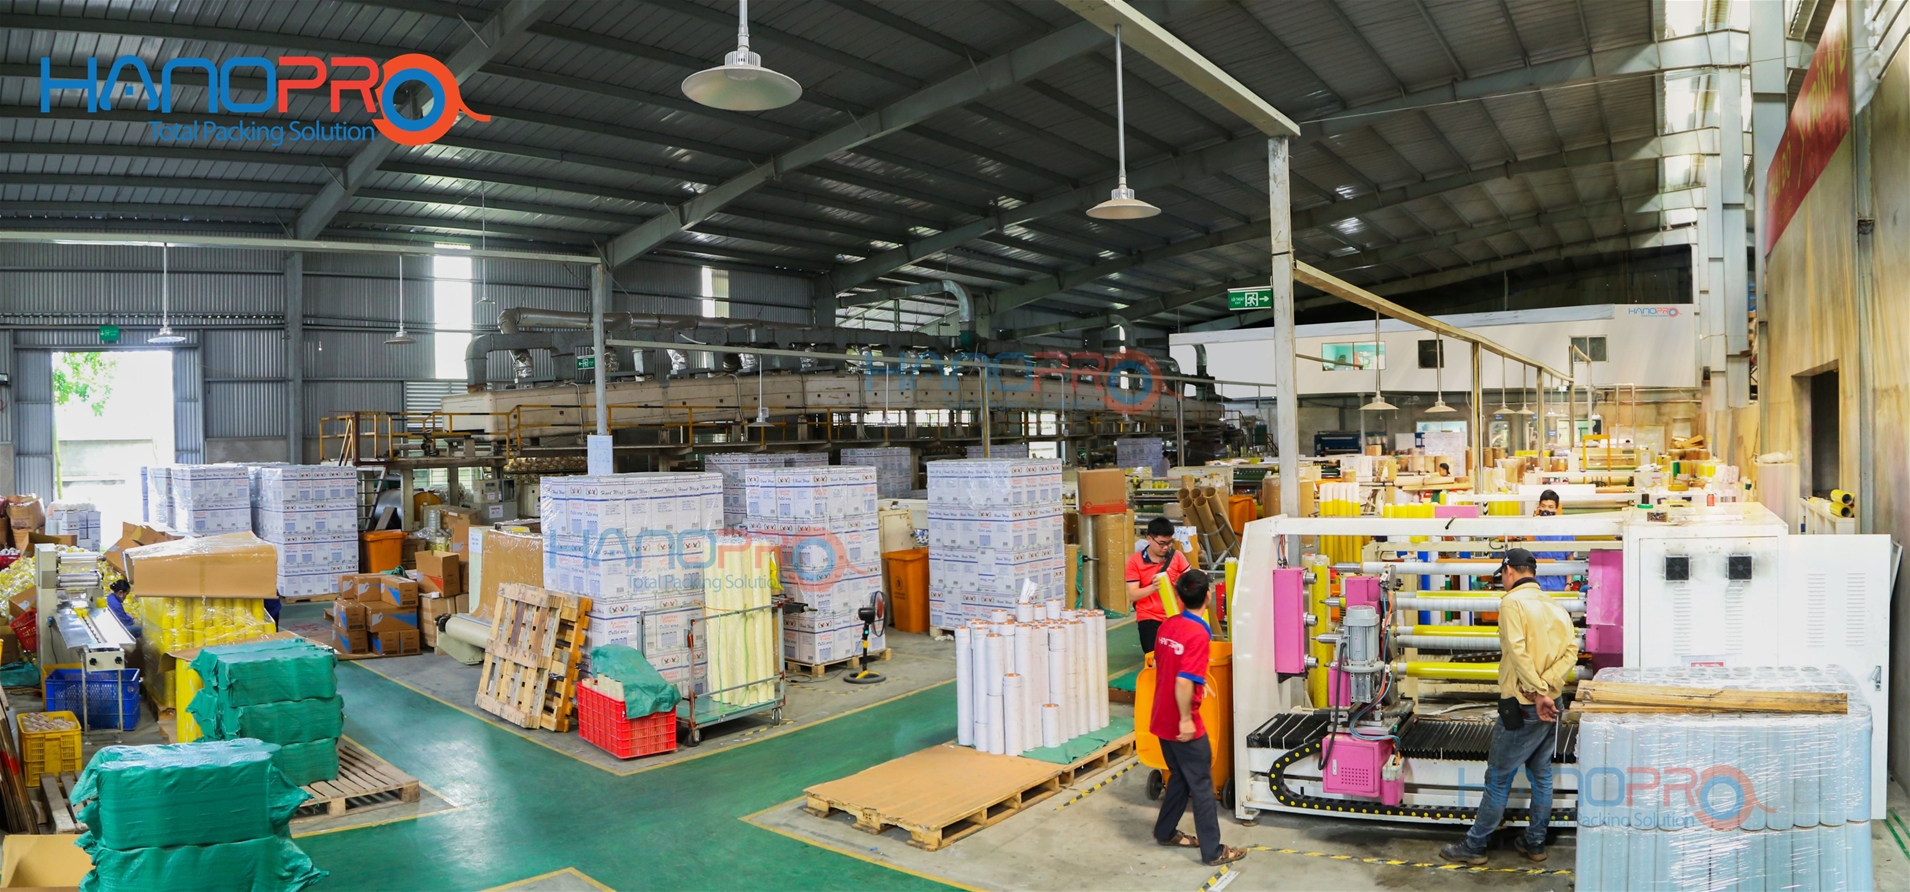 Quy trình đặt mua băng keo in chữ tại Hanopro Bắc Ninh 3